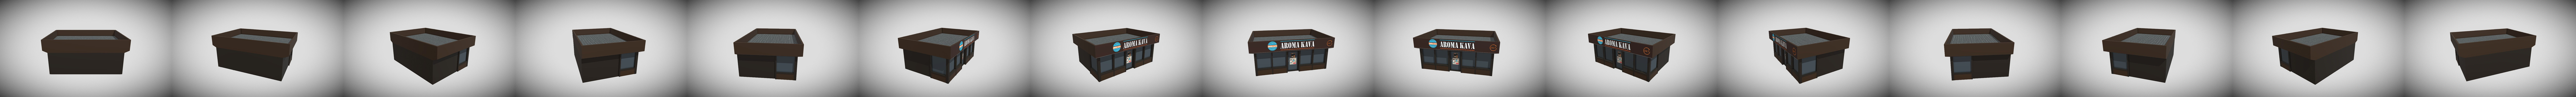 Kava 3D models - Sketchfab